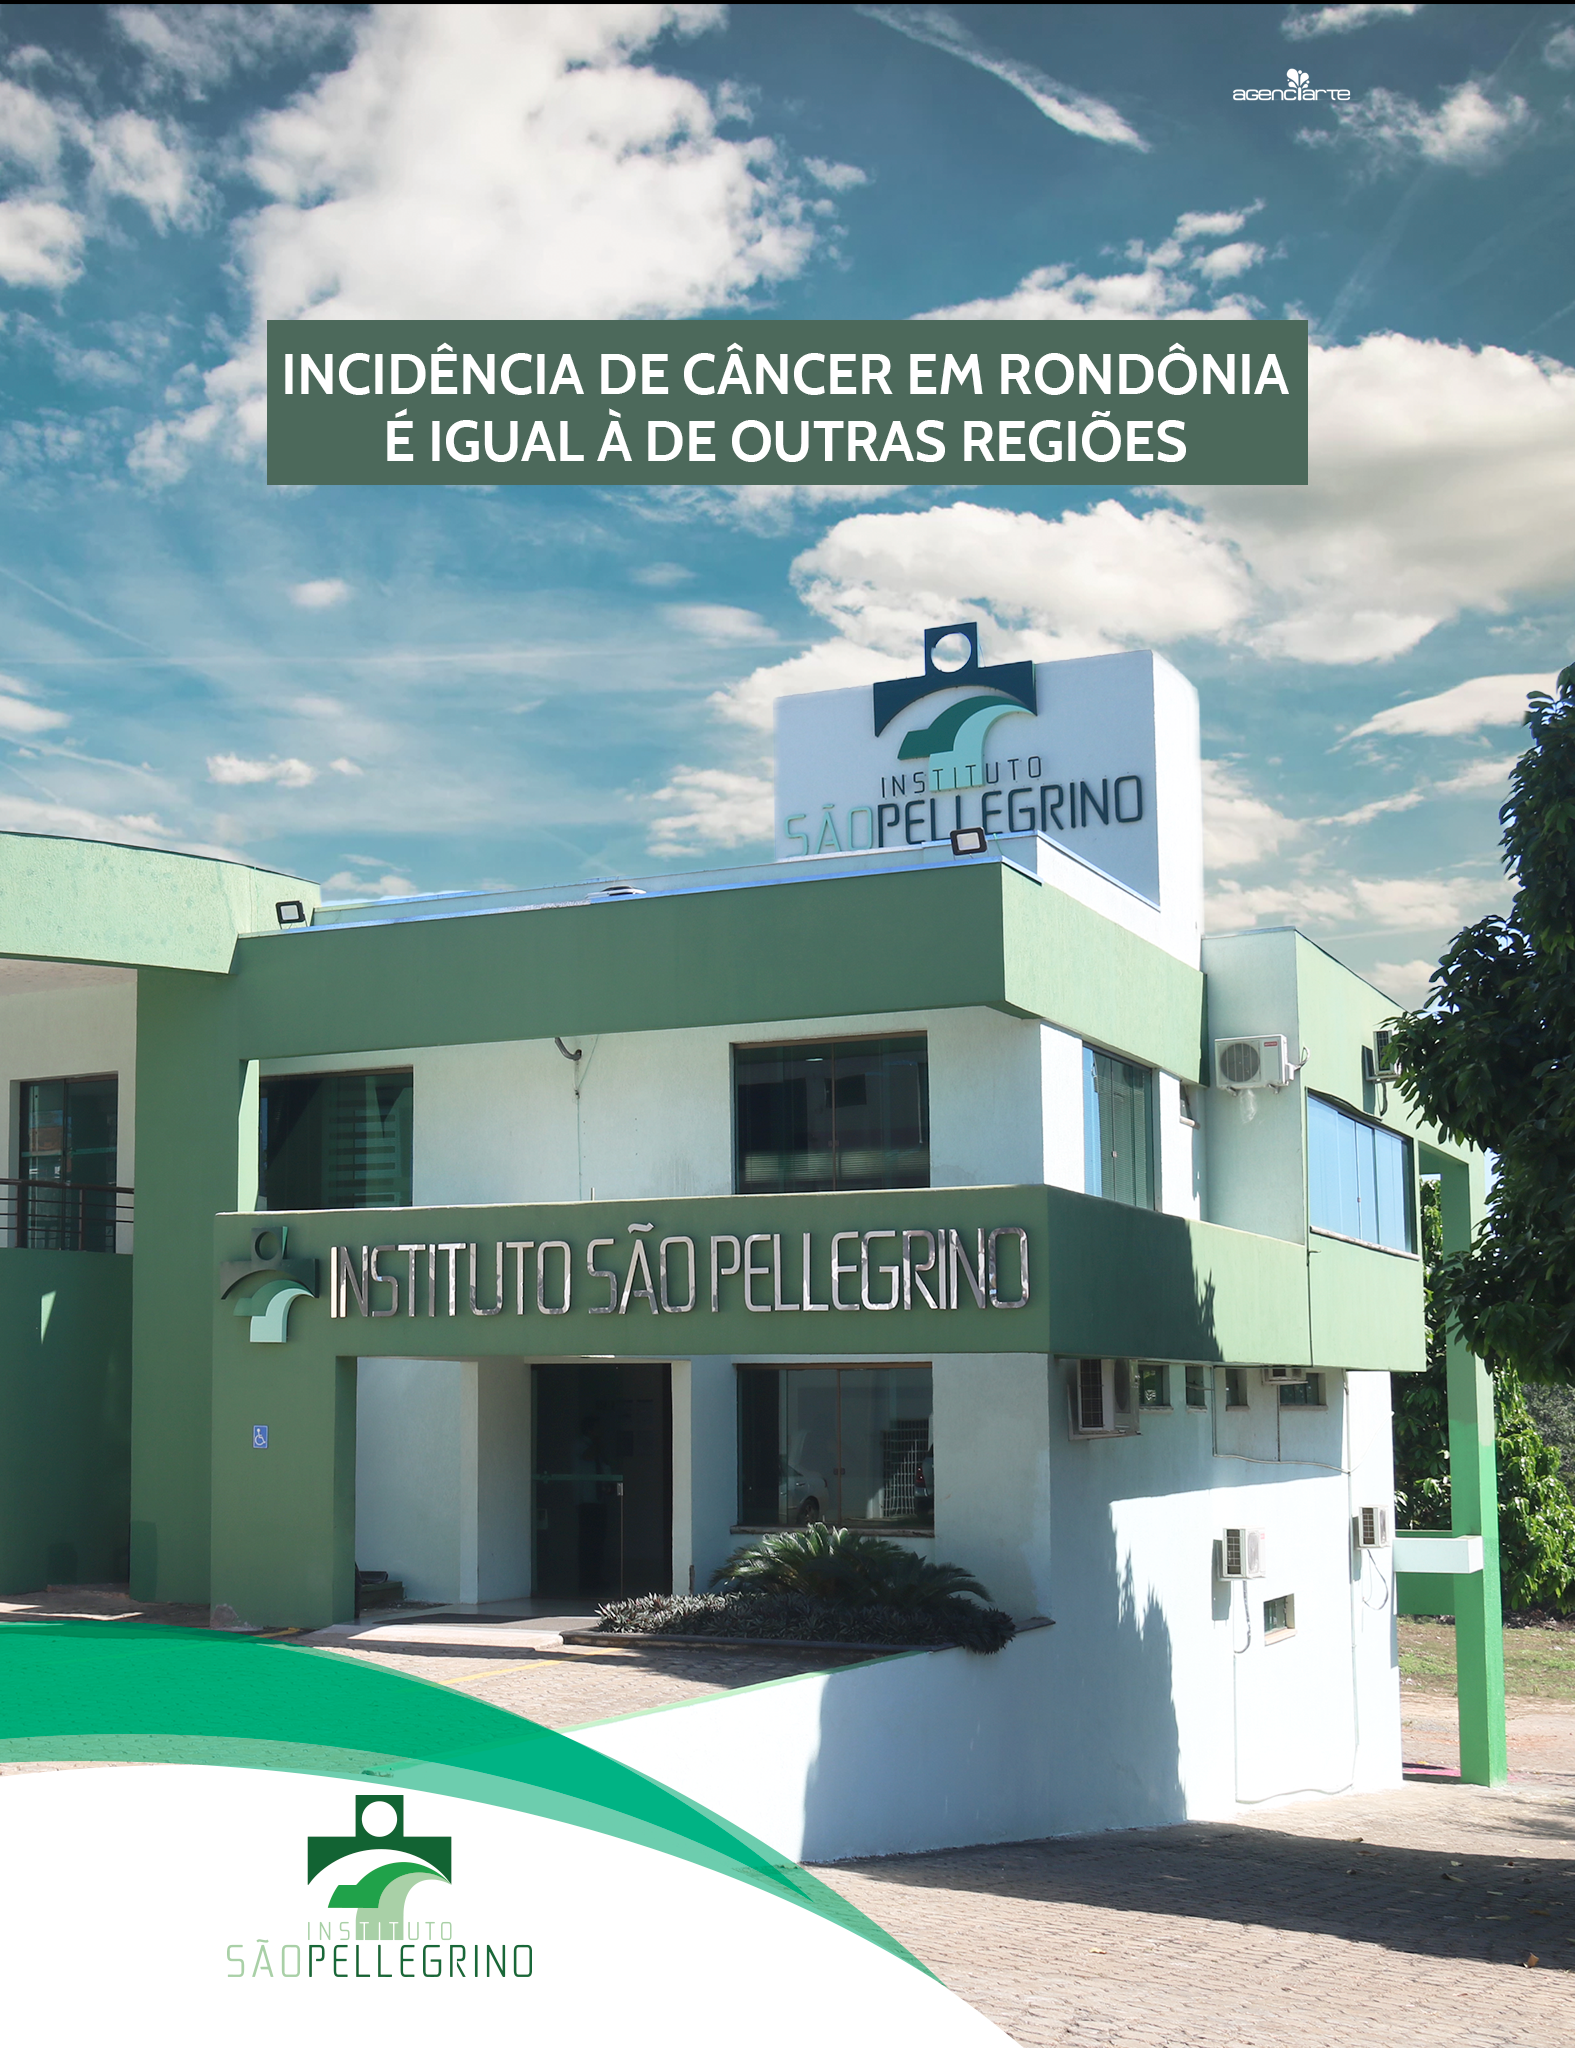 Incidência de câncer em Rondônia é igual à de outras regiões